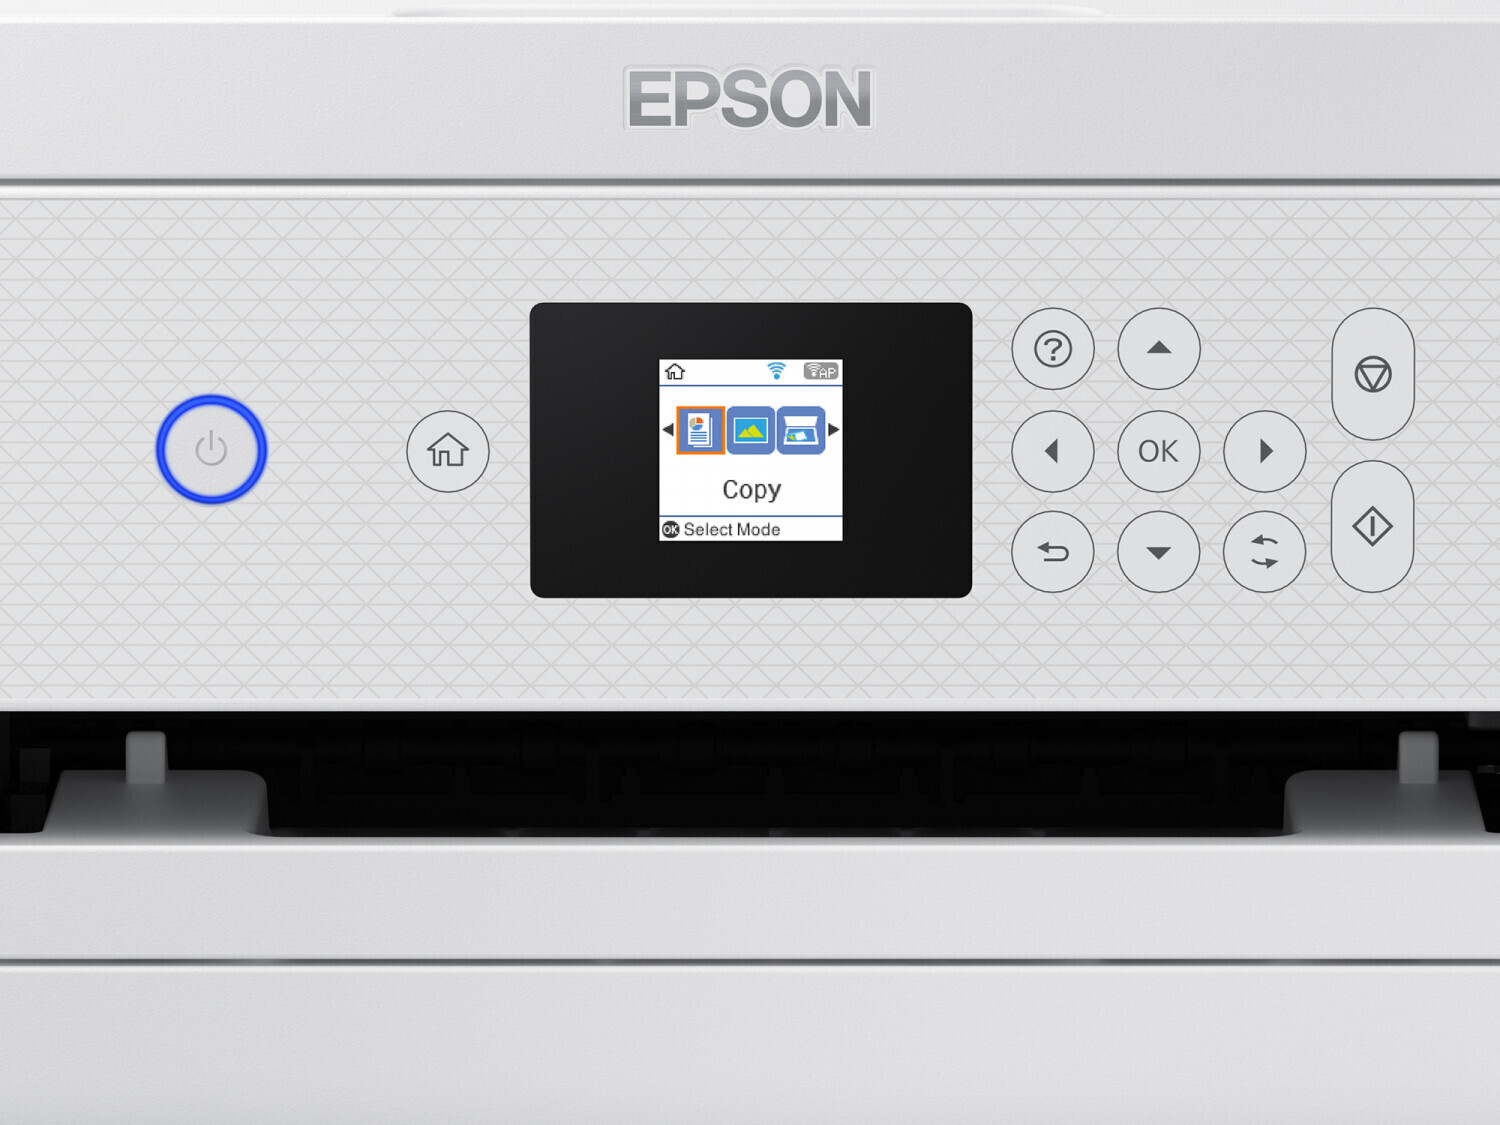 Imprimante jet d'encre EPSON EcoTank ET-2856